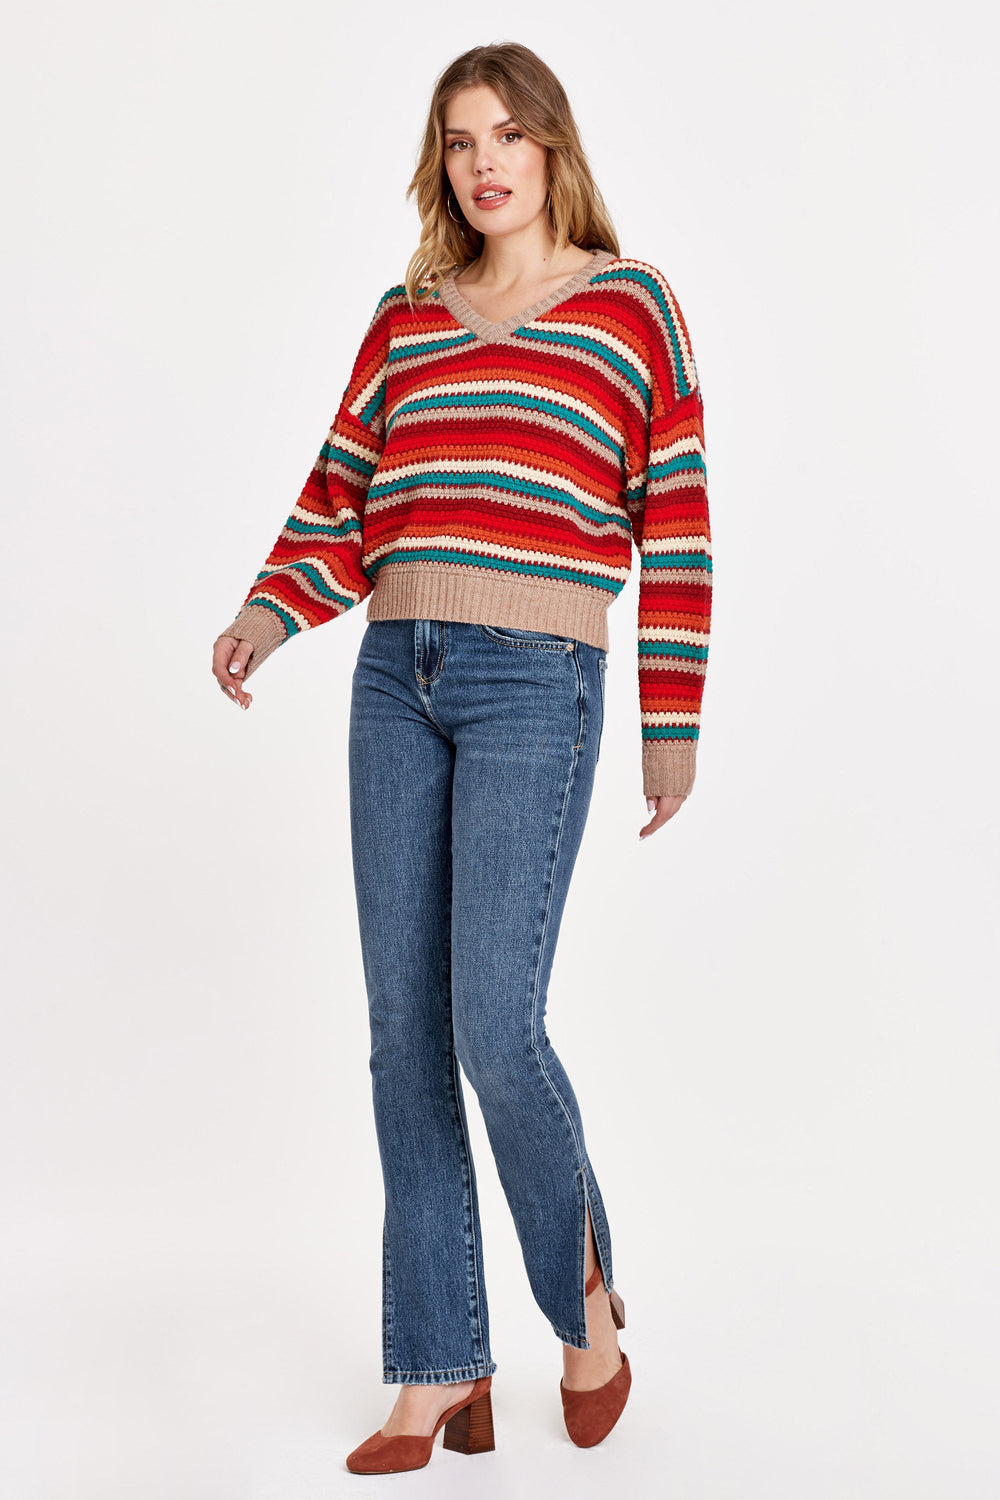 patrice-multi-stripe-sweater-holiday-granada